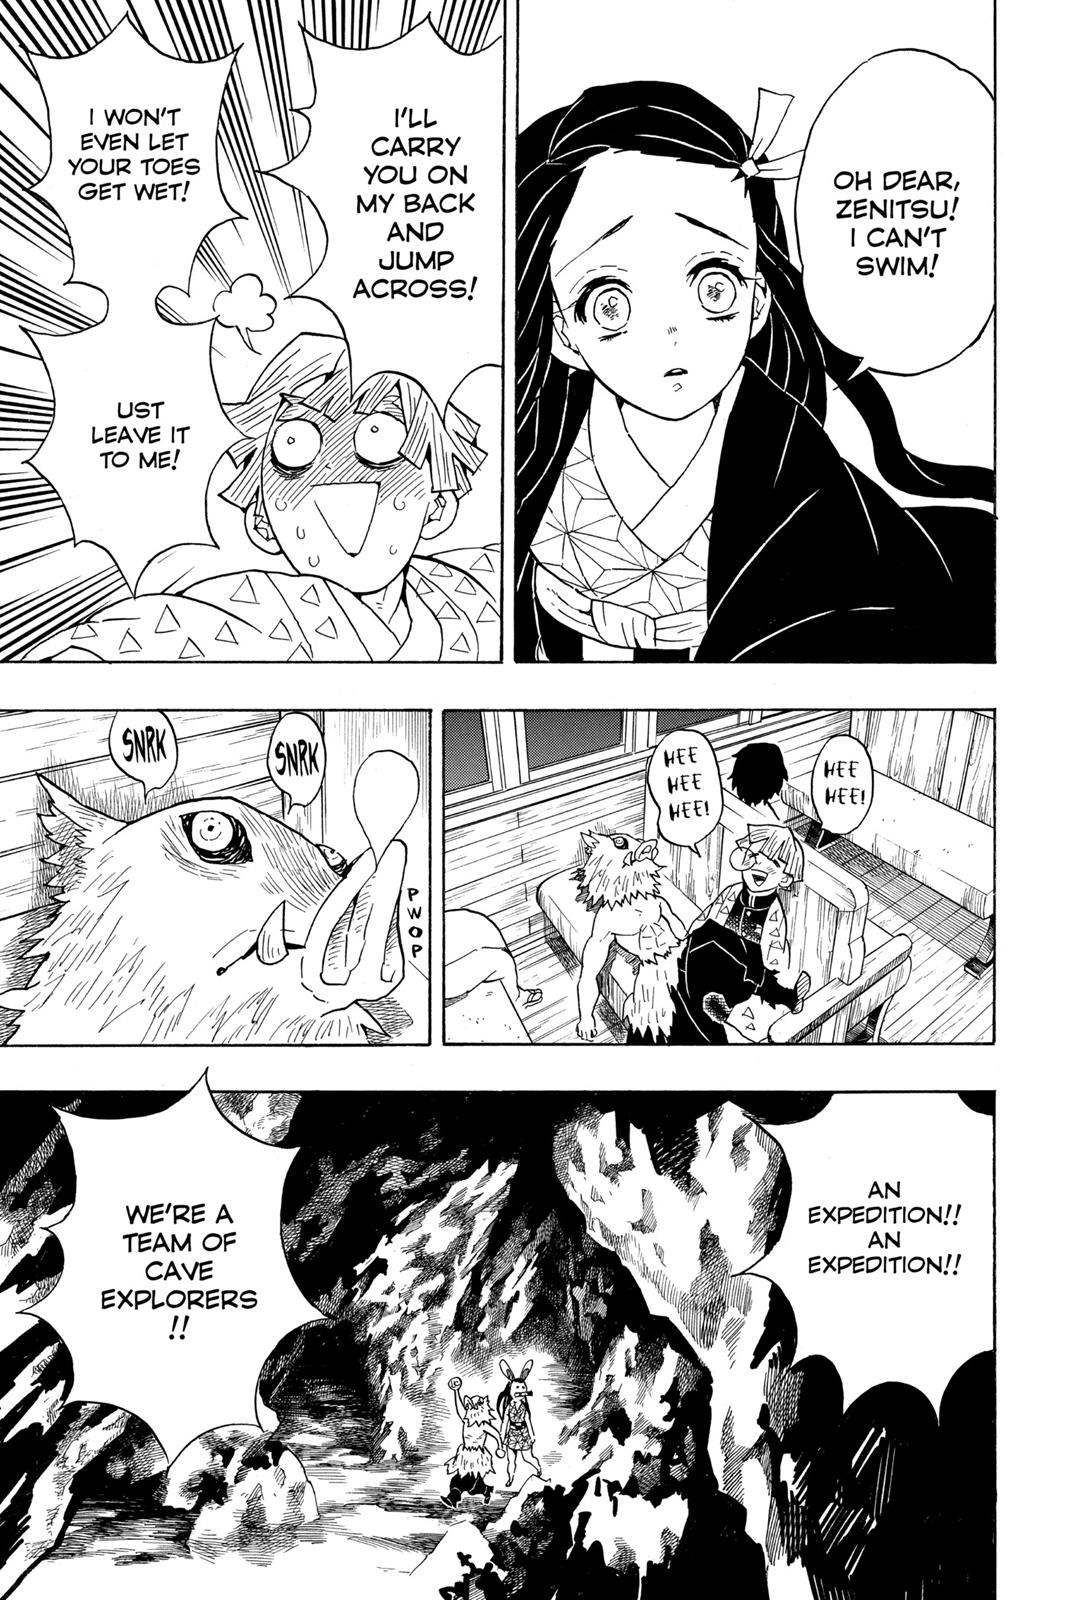 Demon Slayer Manga Manga Chapter - 55 - image 7